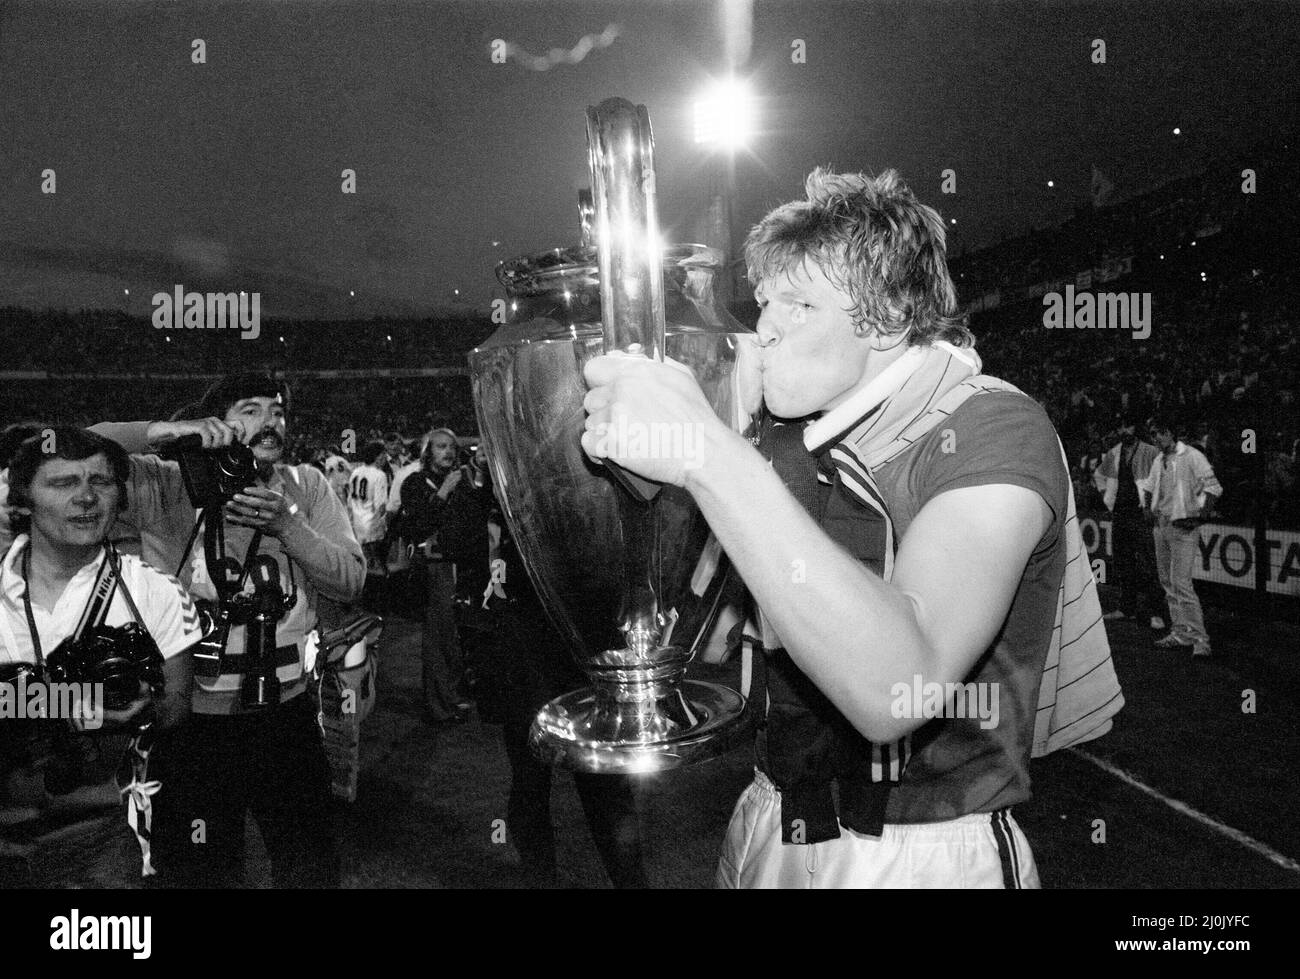 La finale de la coupe d'Europe 1982 a été jouée le 26 mai 1982. Aston Villa, championne d'anglais, a battu les vainqueurs de la ligue ouest-allemande Bayern Munich 1-0 à de Kuip à Rotterdam, pays-Bas, pour remporter la coupe d'Europe pour la première fois, et jusqu'à présent pour la seule fois.26th mai 1982 (photo) Banque D'Images